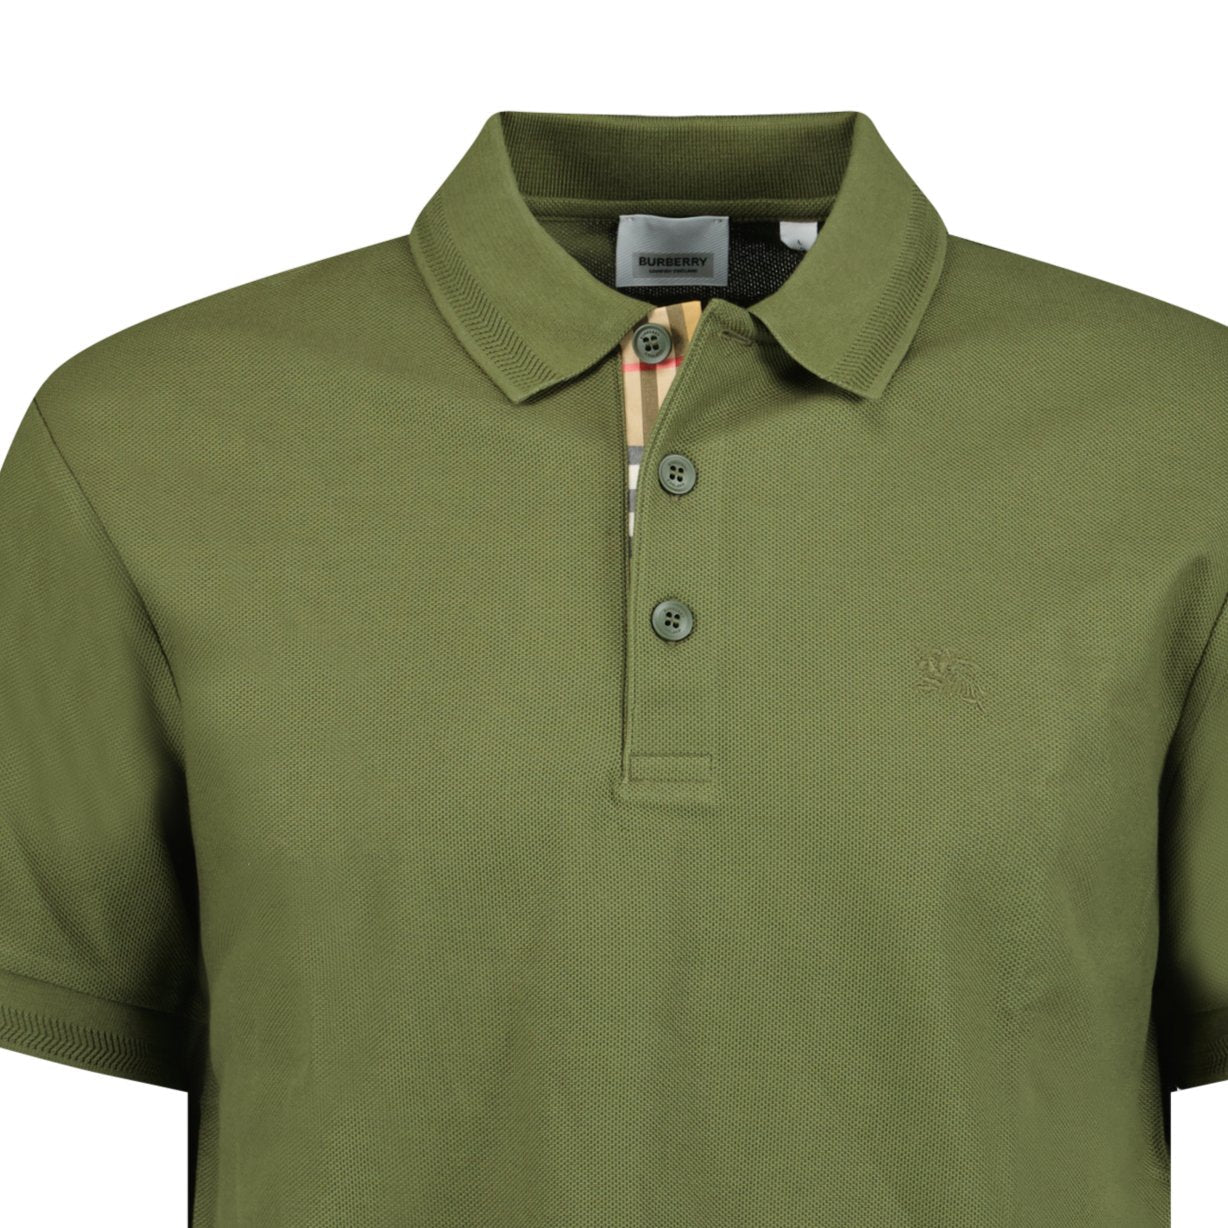 Burberry 'Eddie' Polo-Shirt Olive - Boinclo ltd - Outlet Sale Under Retail